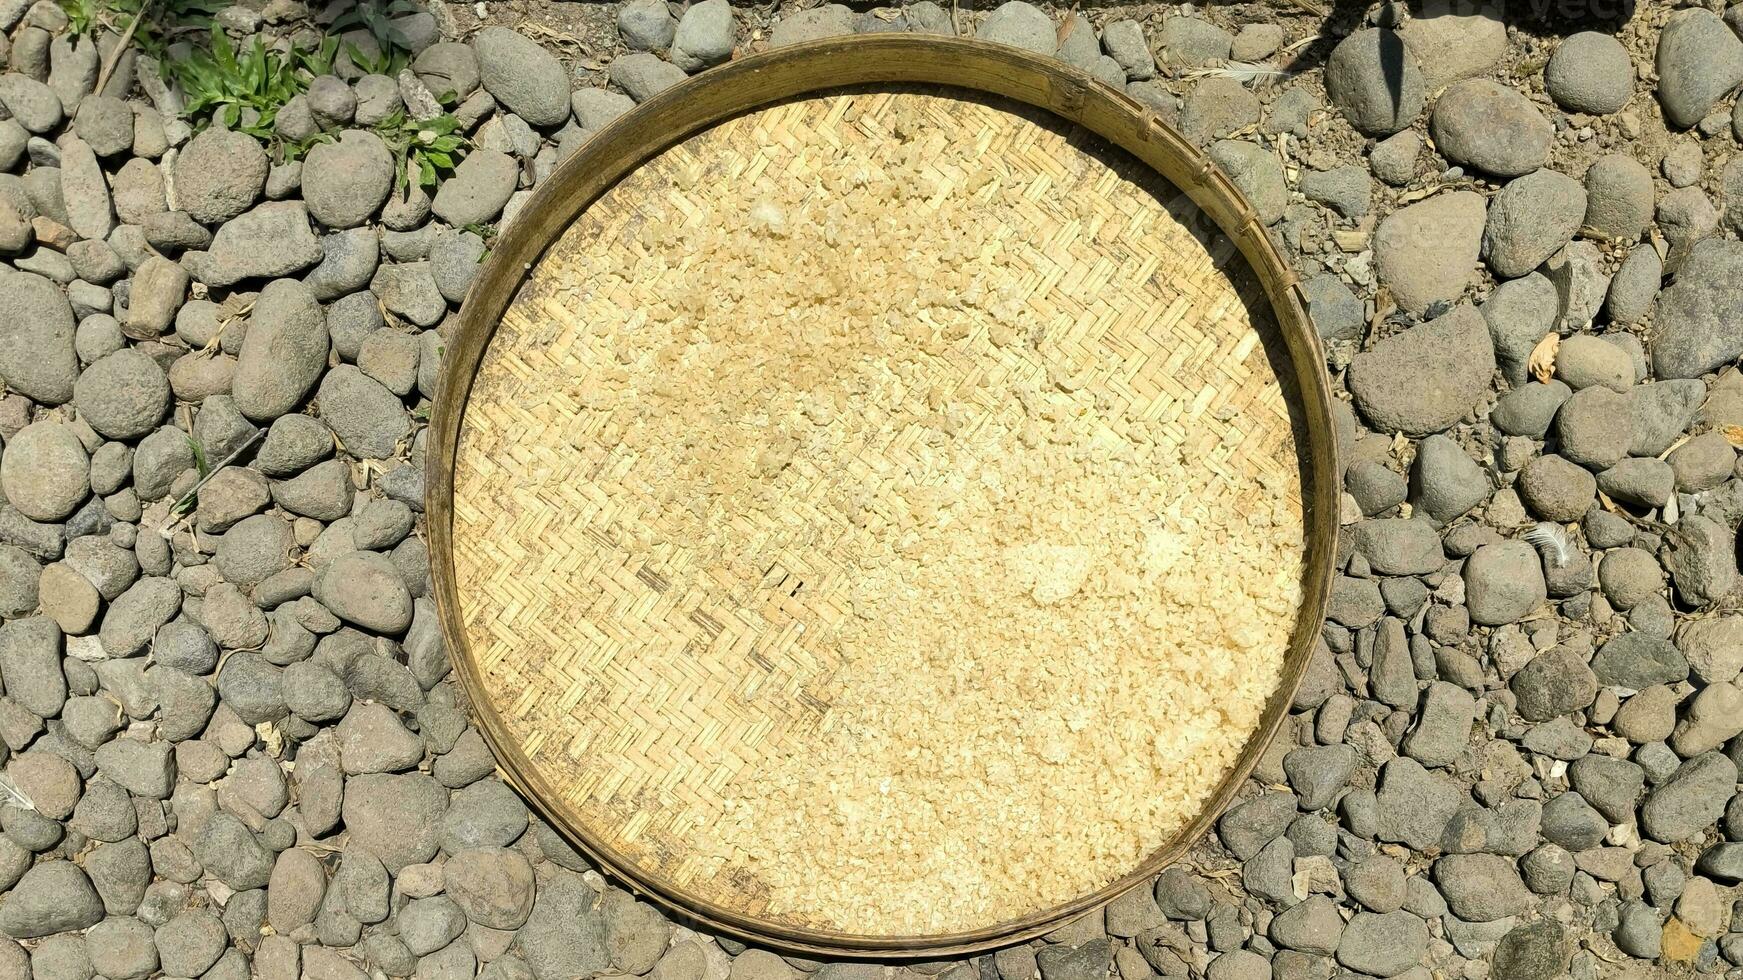 das verbleibend Reis ist getrocknet im das Sonne zu Sein verarbeitet in Snacks foto